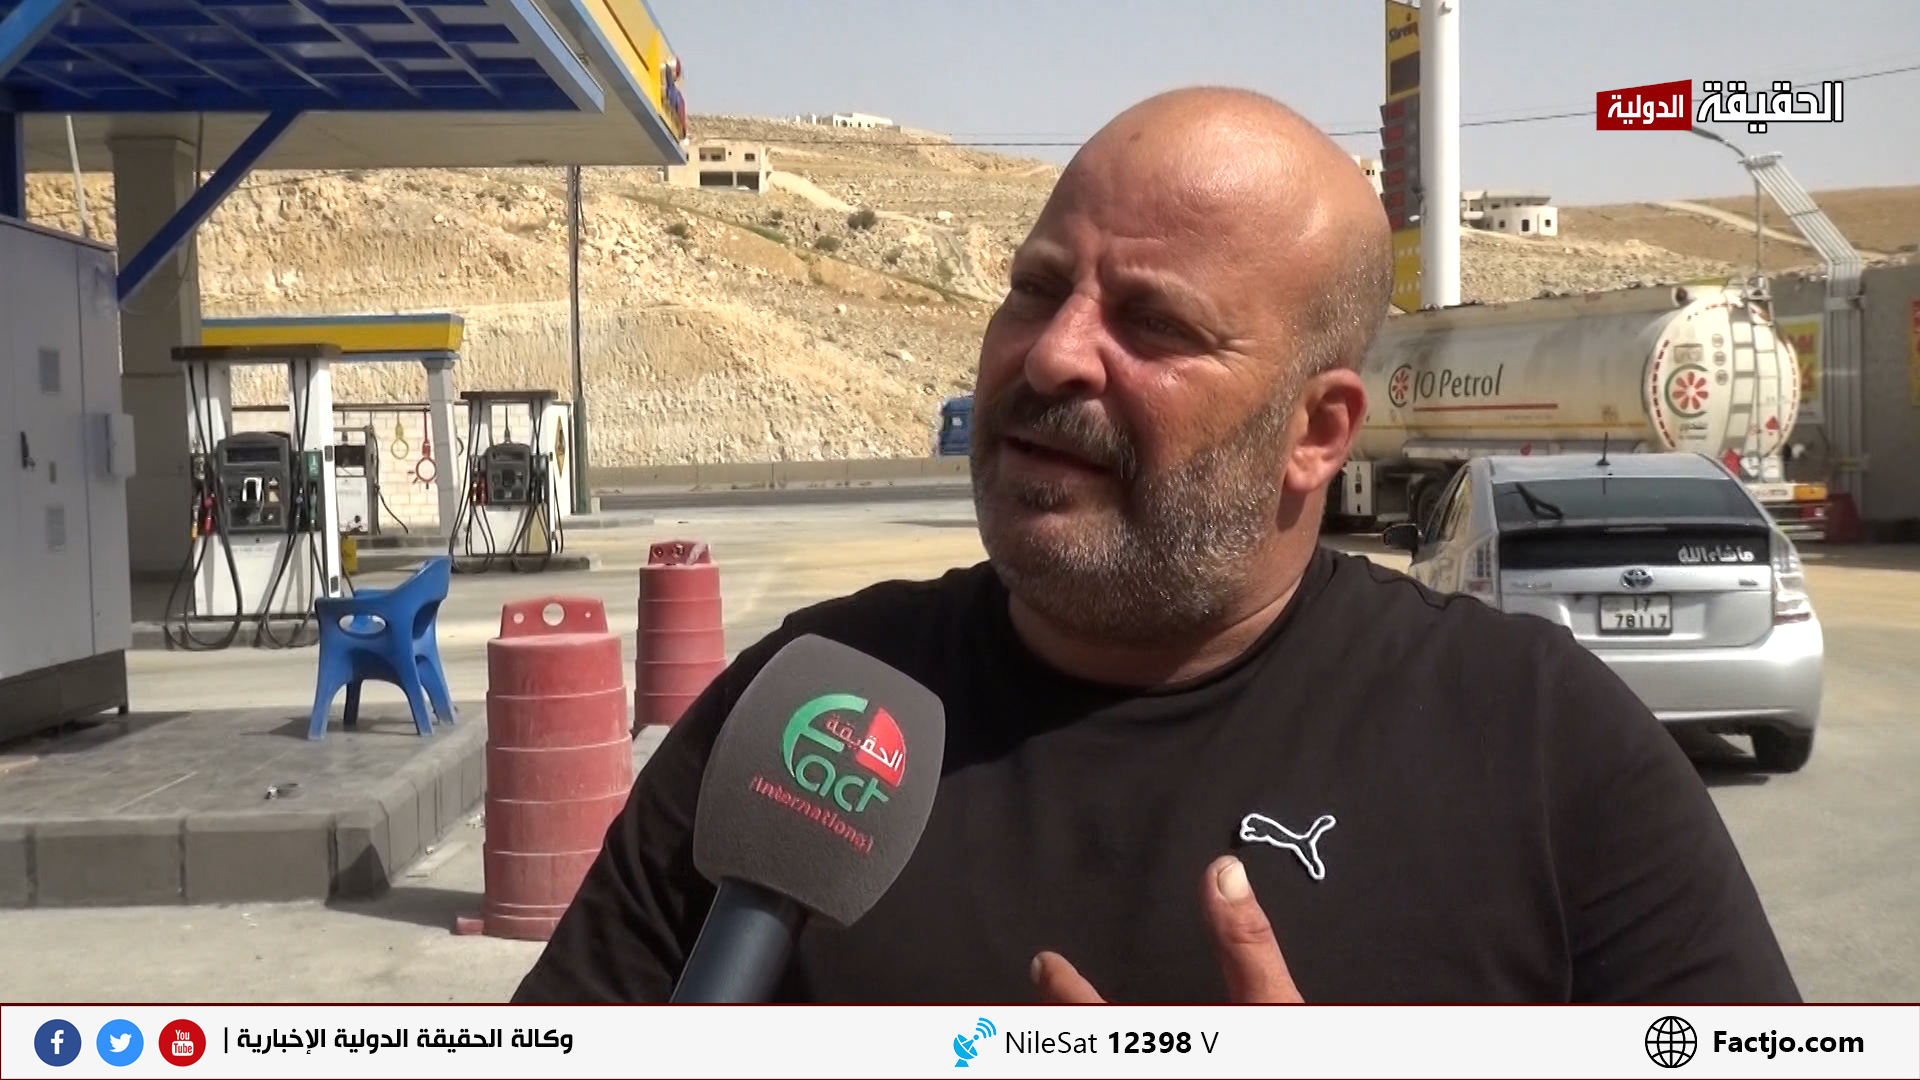 اردنيون يرفضون التوجه الحكومي نحو فرض رسوم على استخدام الطرق.. تقرير تلفزيوني